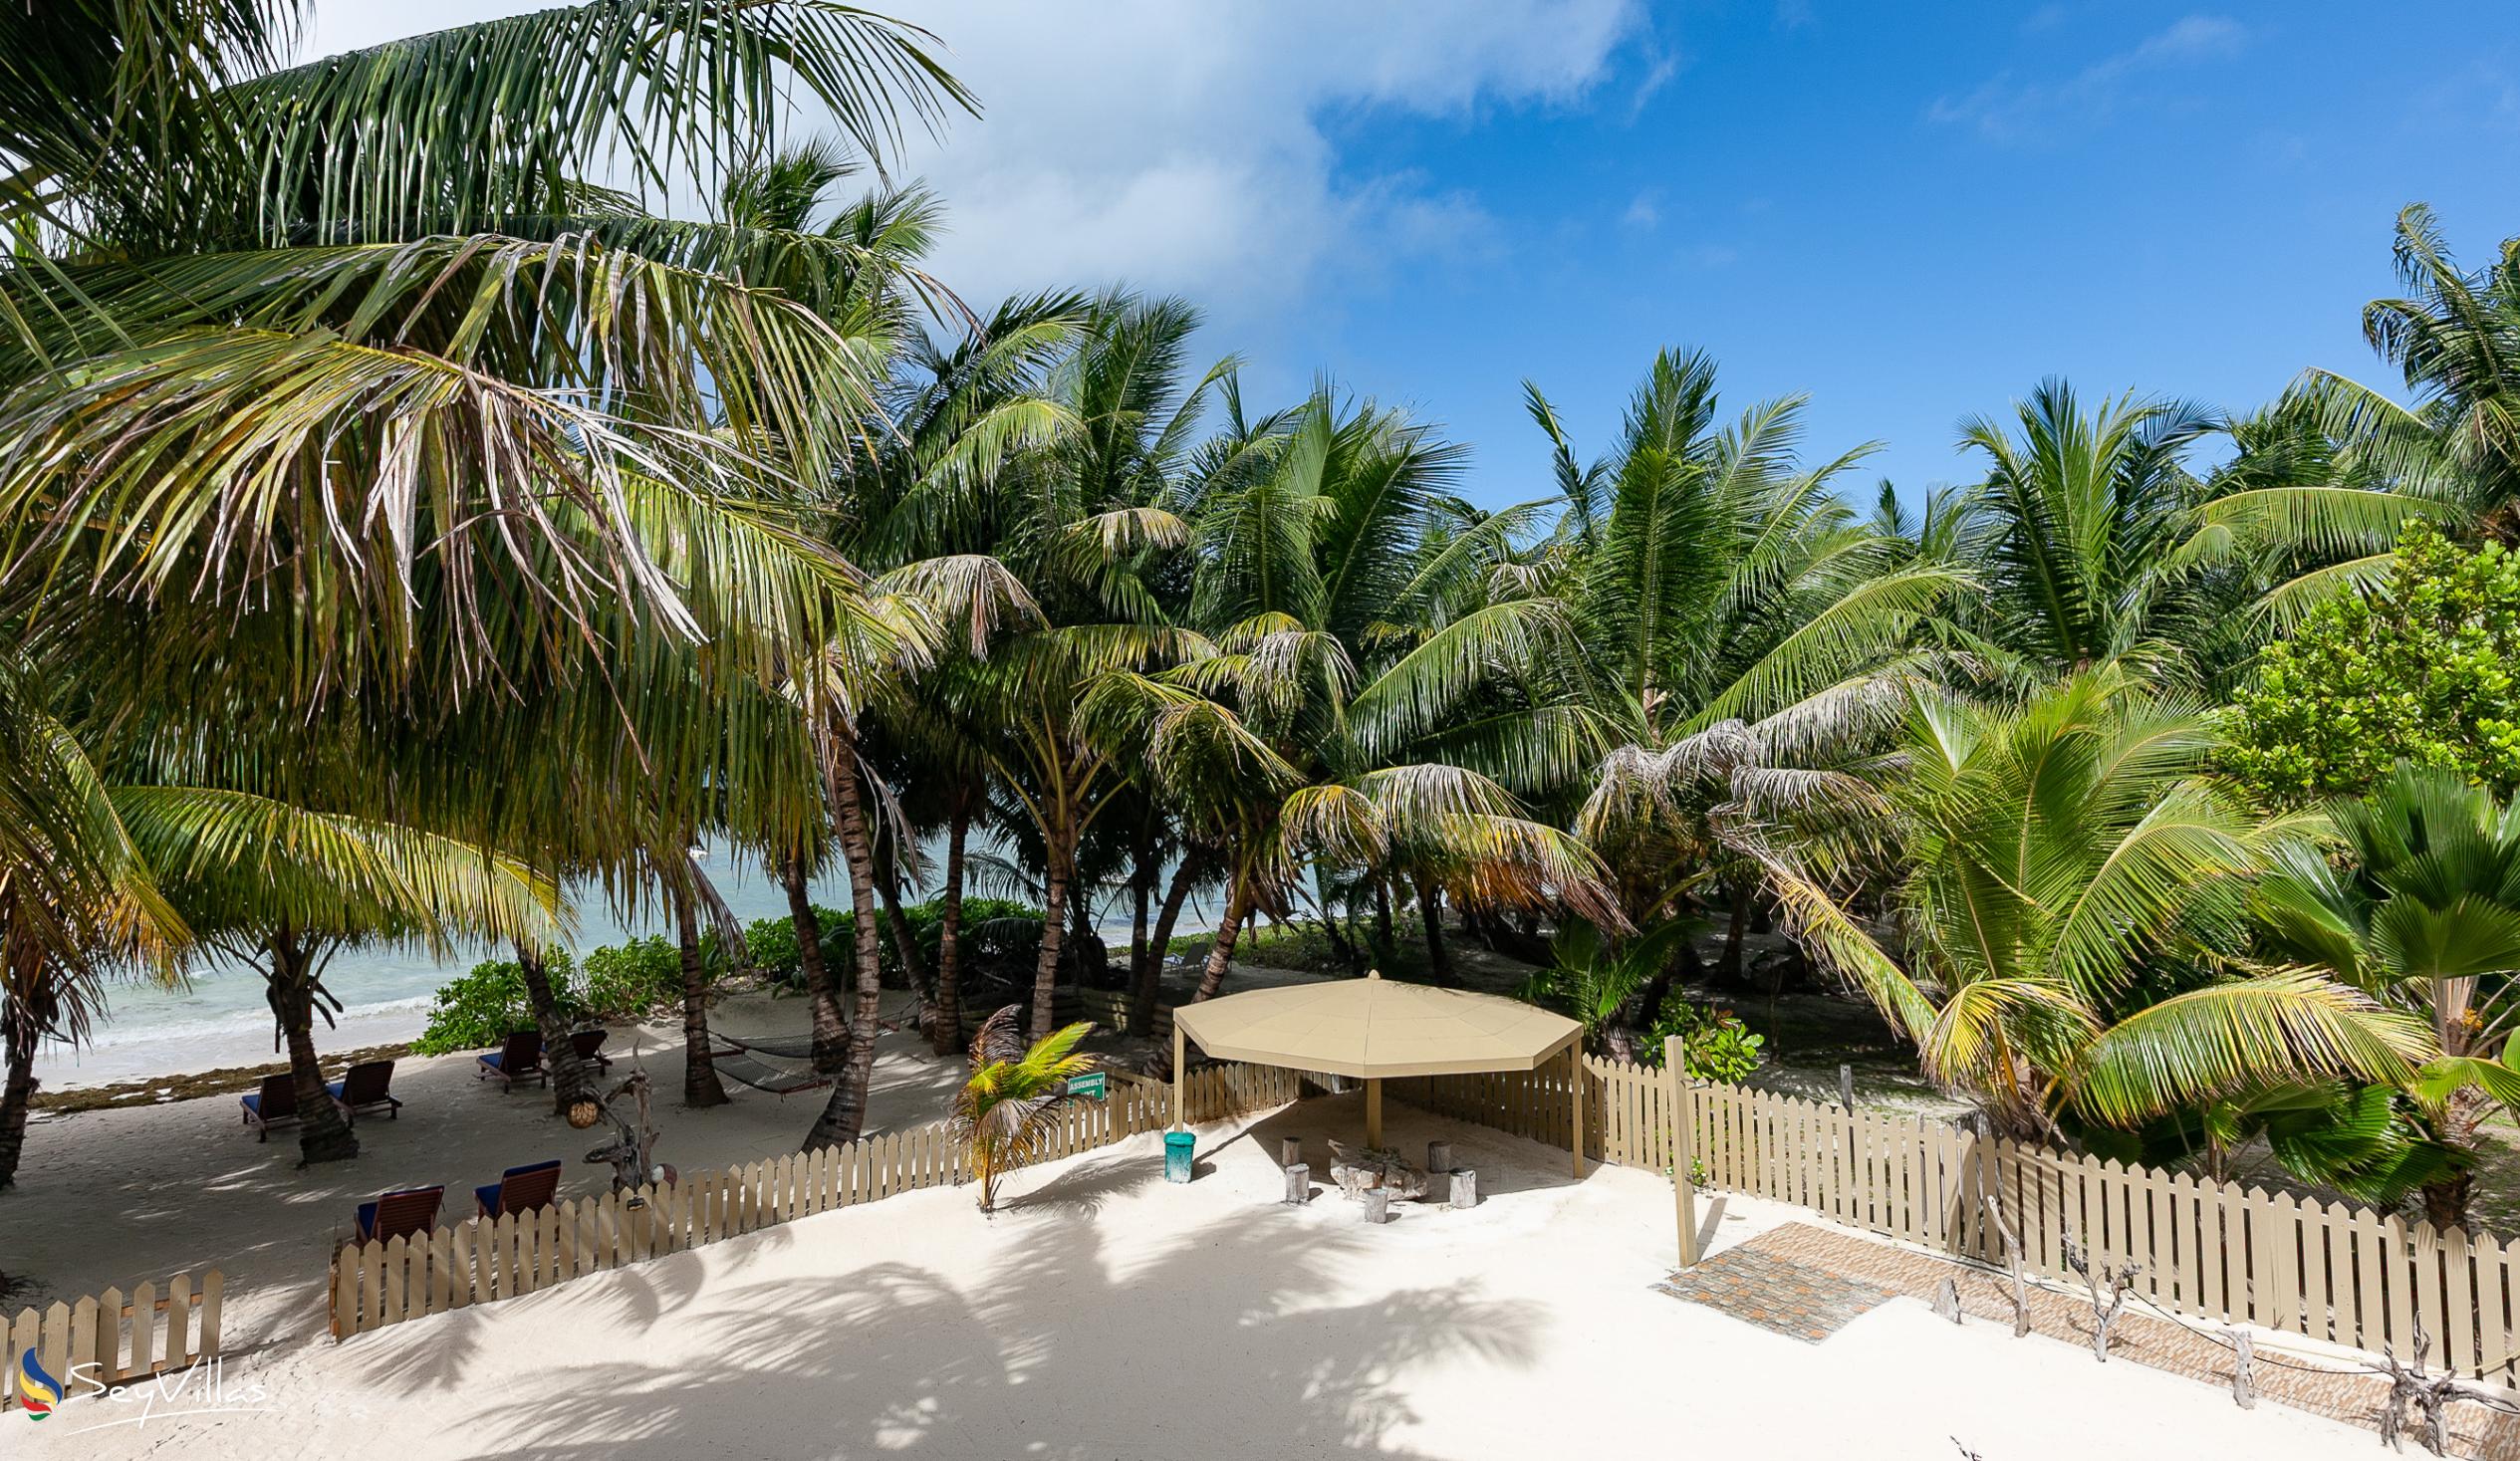 Foto 7: Seashell Beach Villa - Aussenbereich - Praslin (Seychellen)